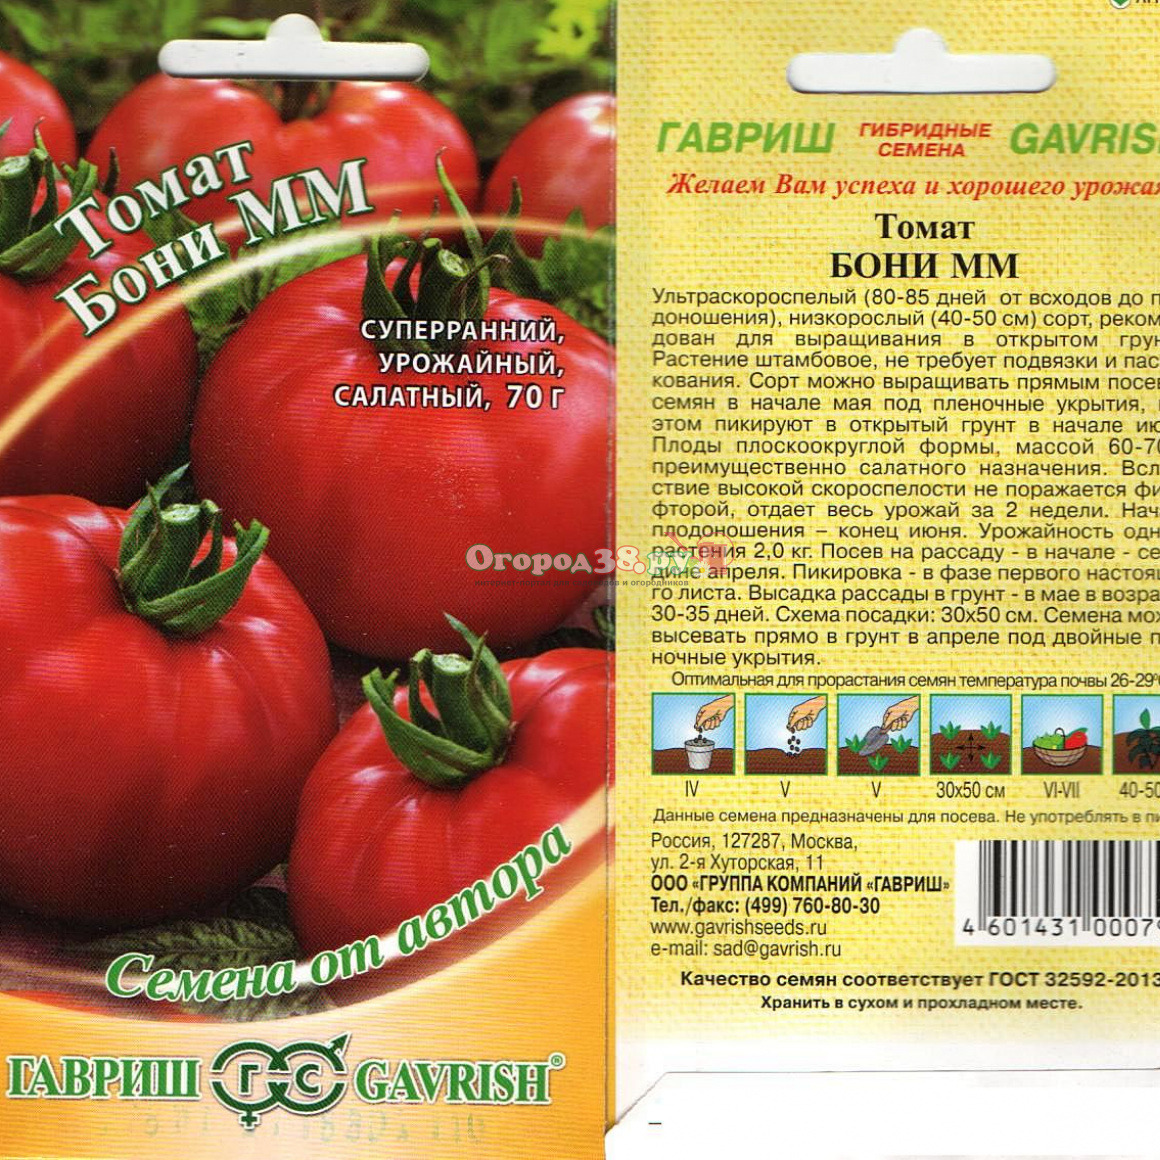 Характеристика и описание томата “баловень судьбы”